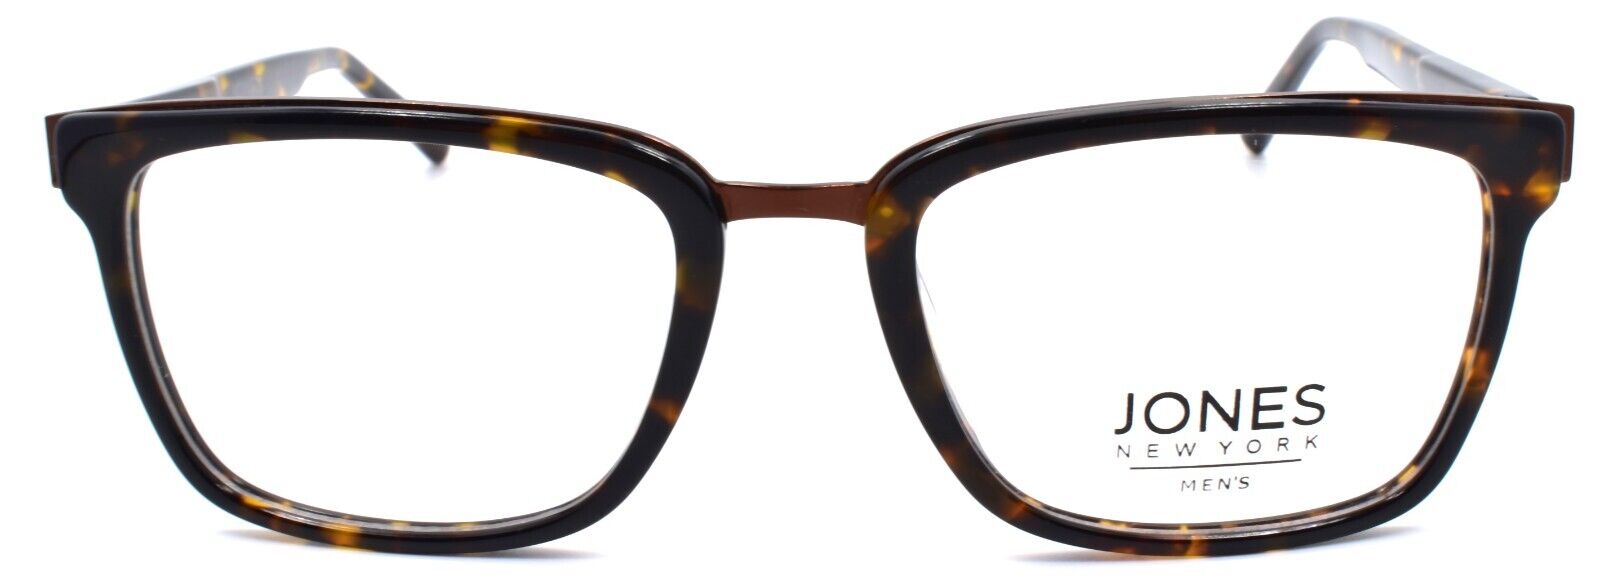 2-Jones New York JNY J529 Men's Eyeglasses Frames 53-20-145 Tortoise-751286310580-IKSpecs